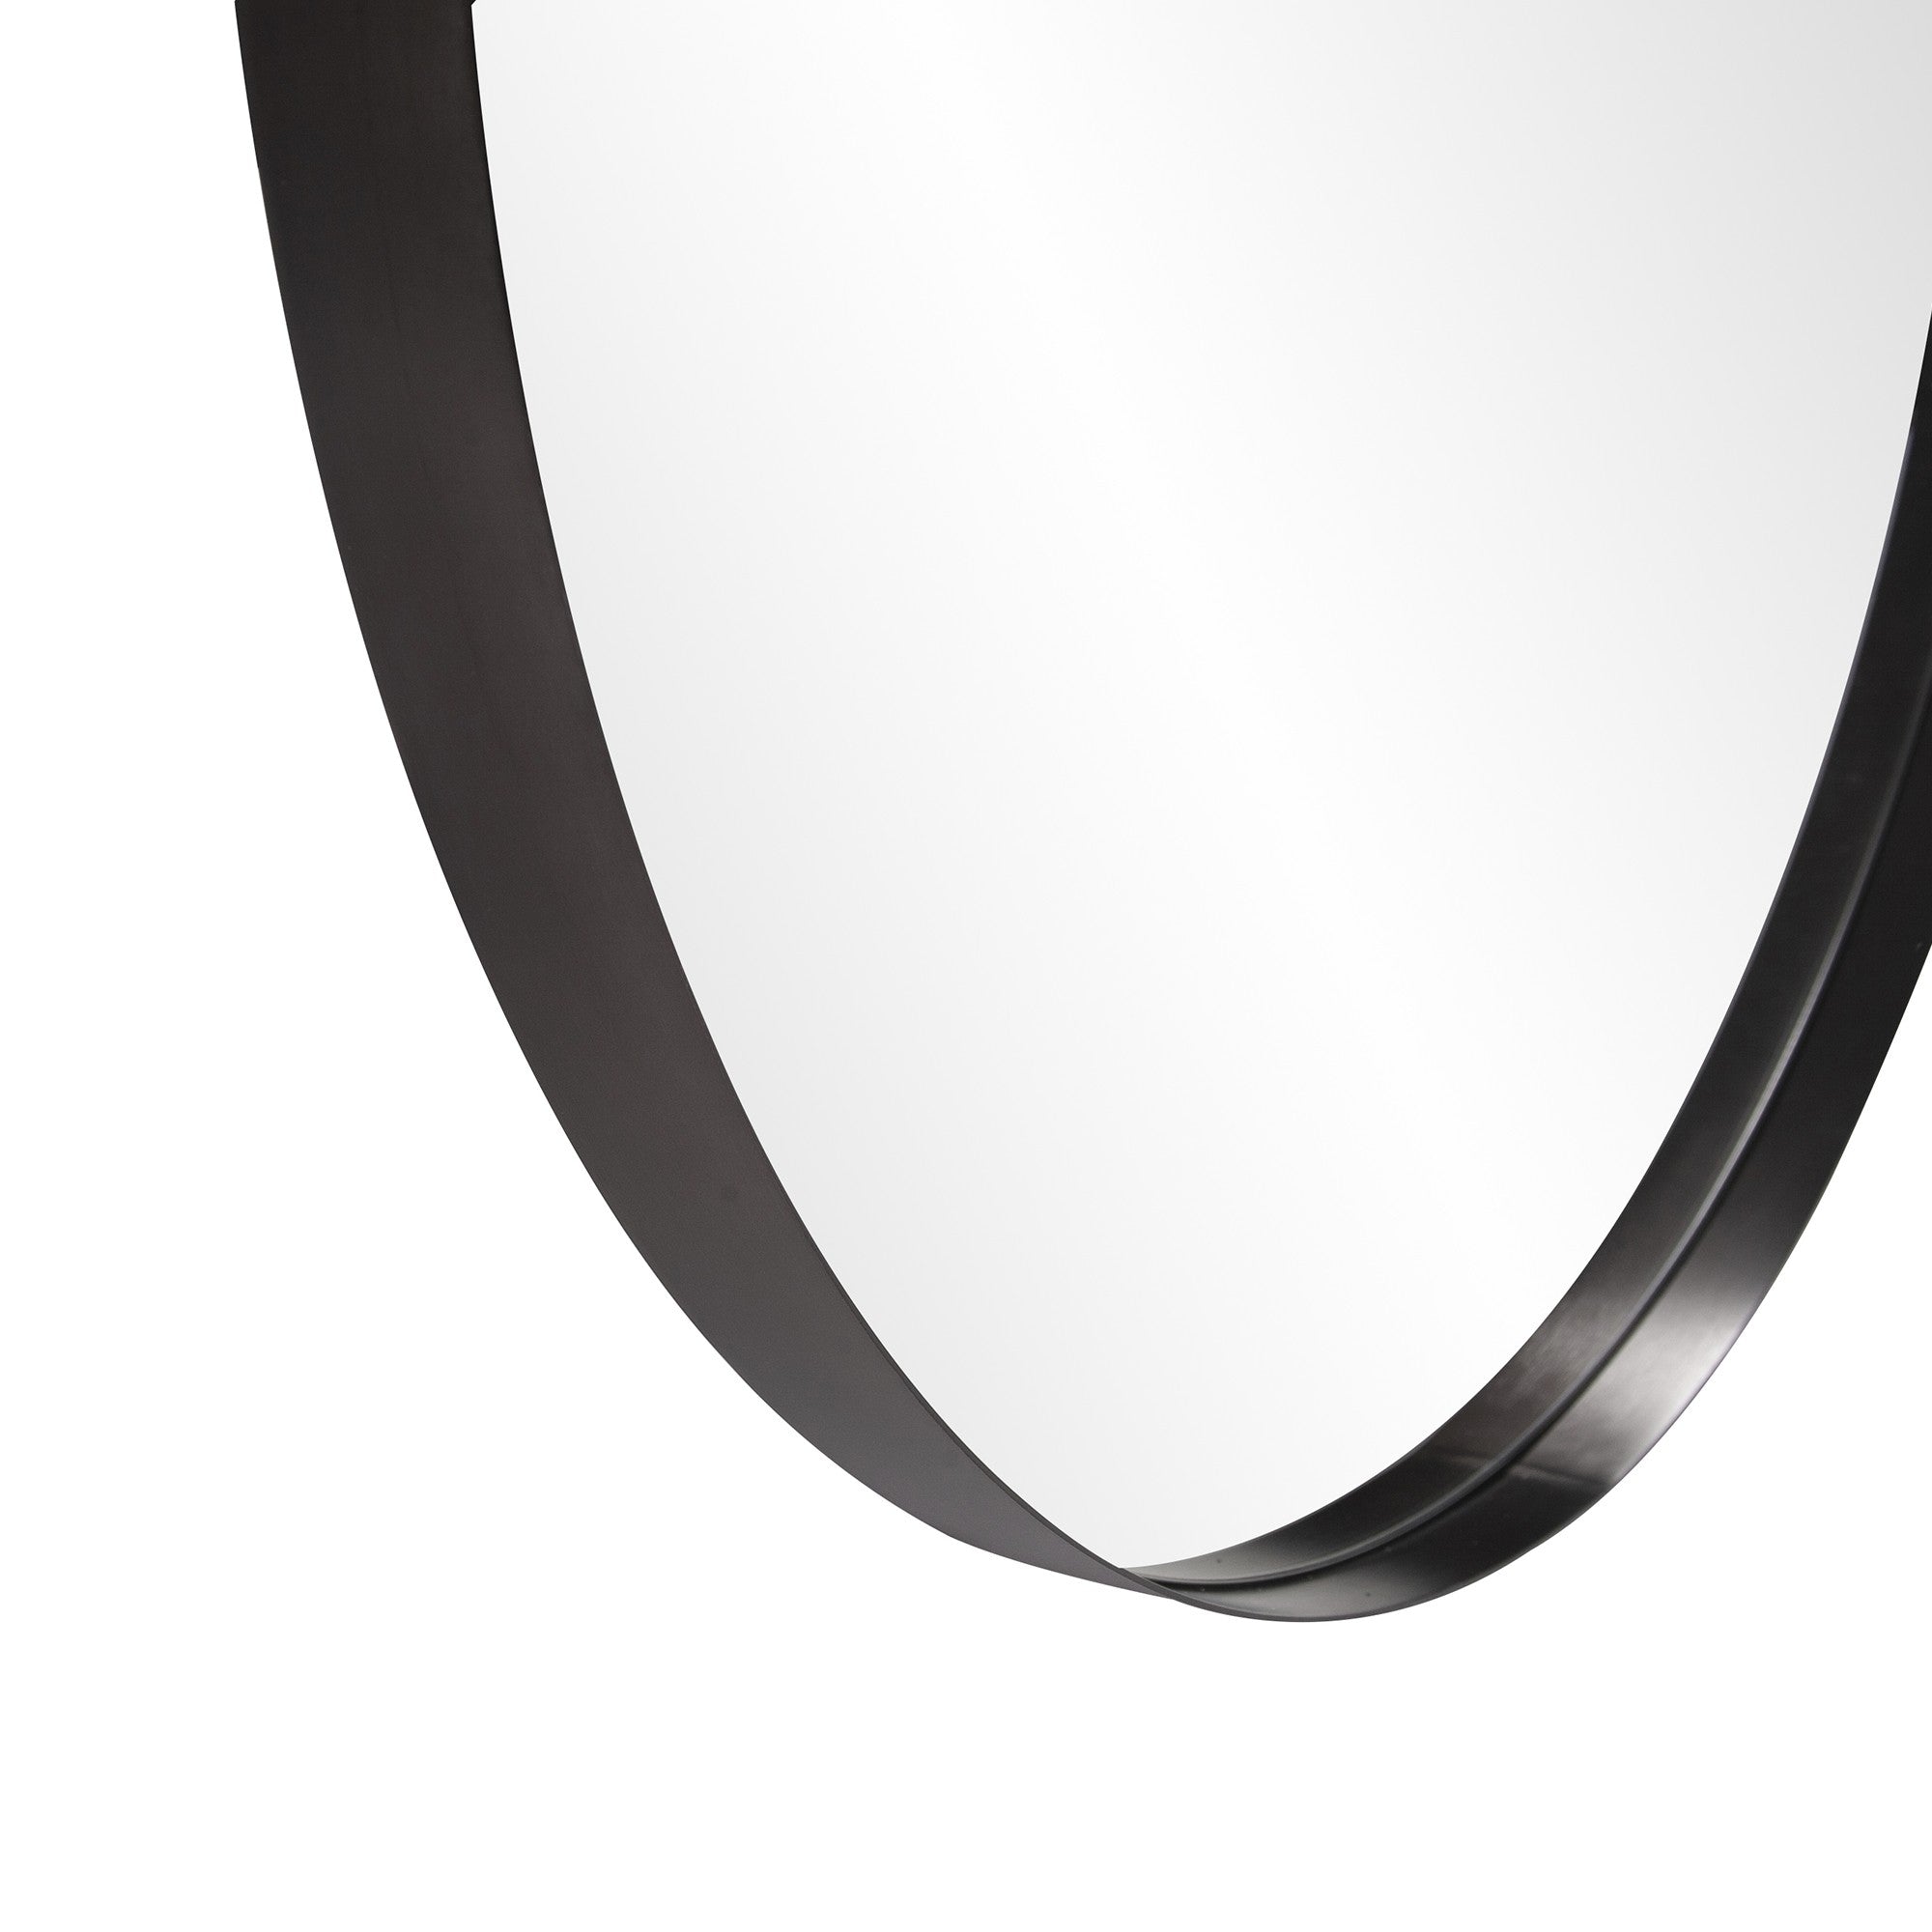 36" Black Round Framed Accent Mirror